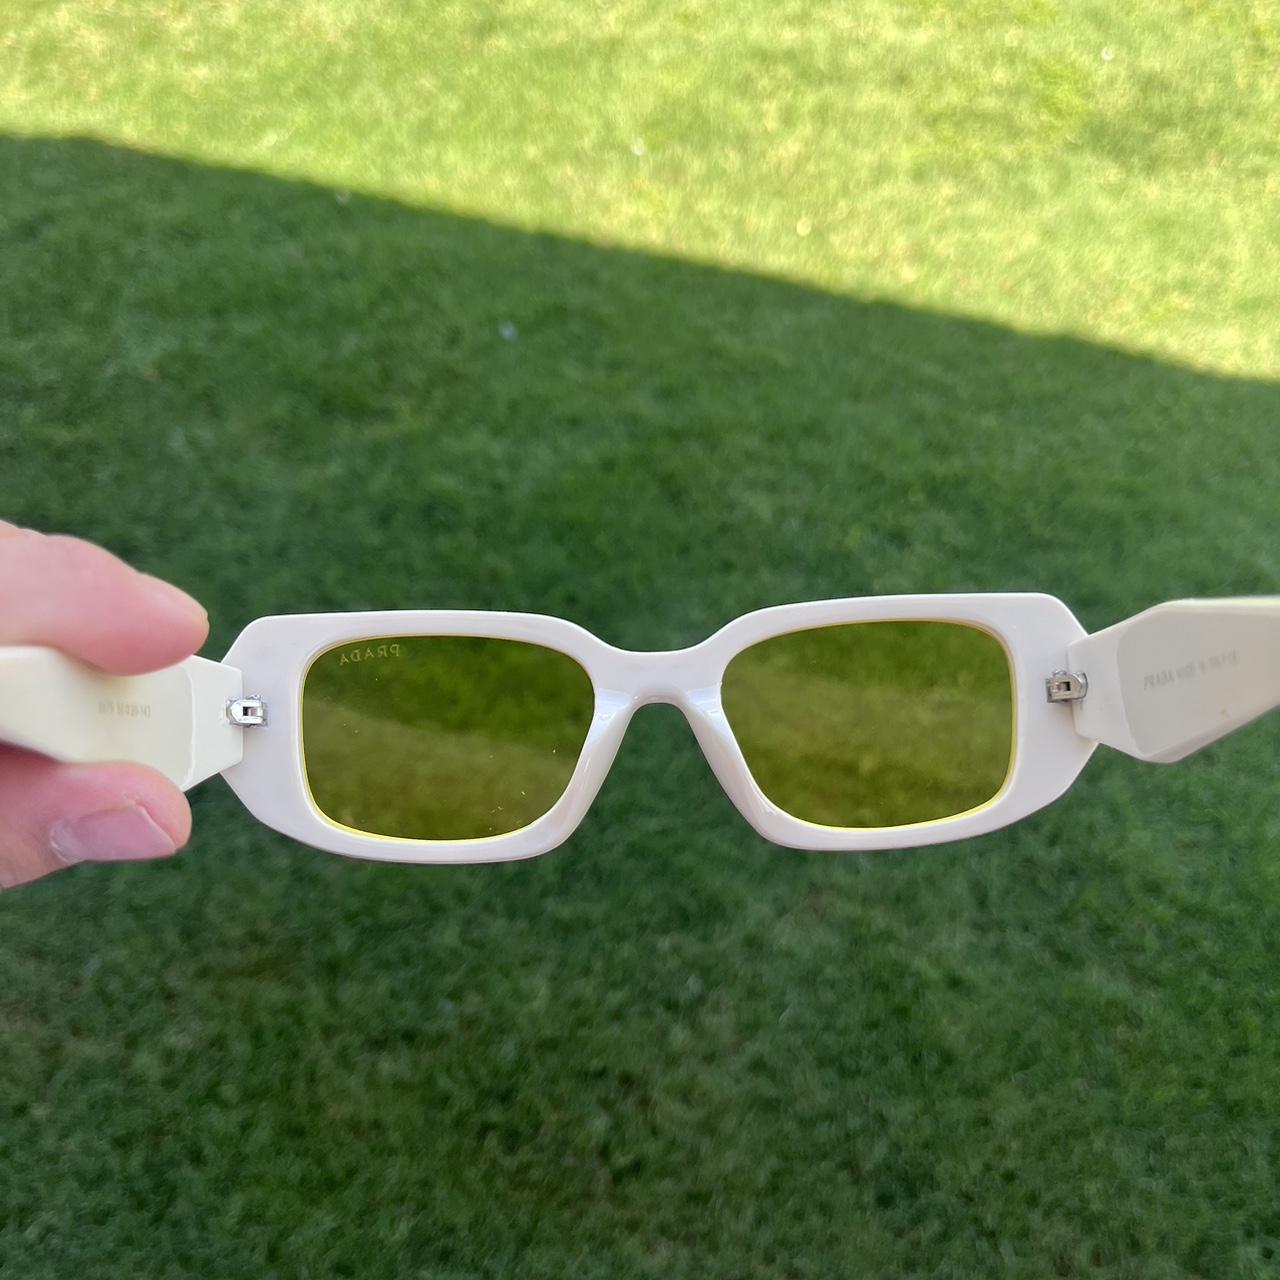 Prada Sunglasses 17 WS BRAND NEW -Come With NO Box... - Depop